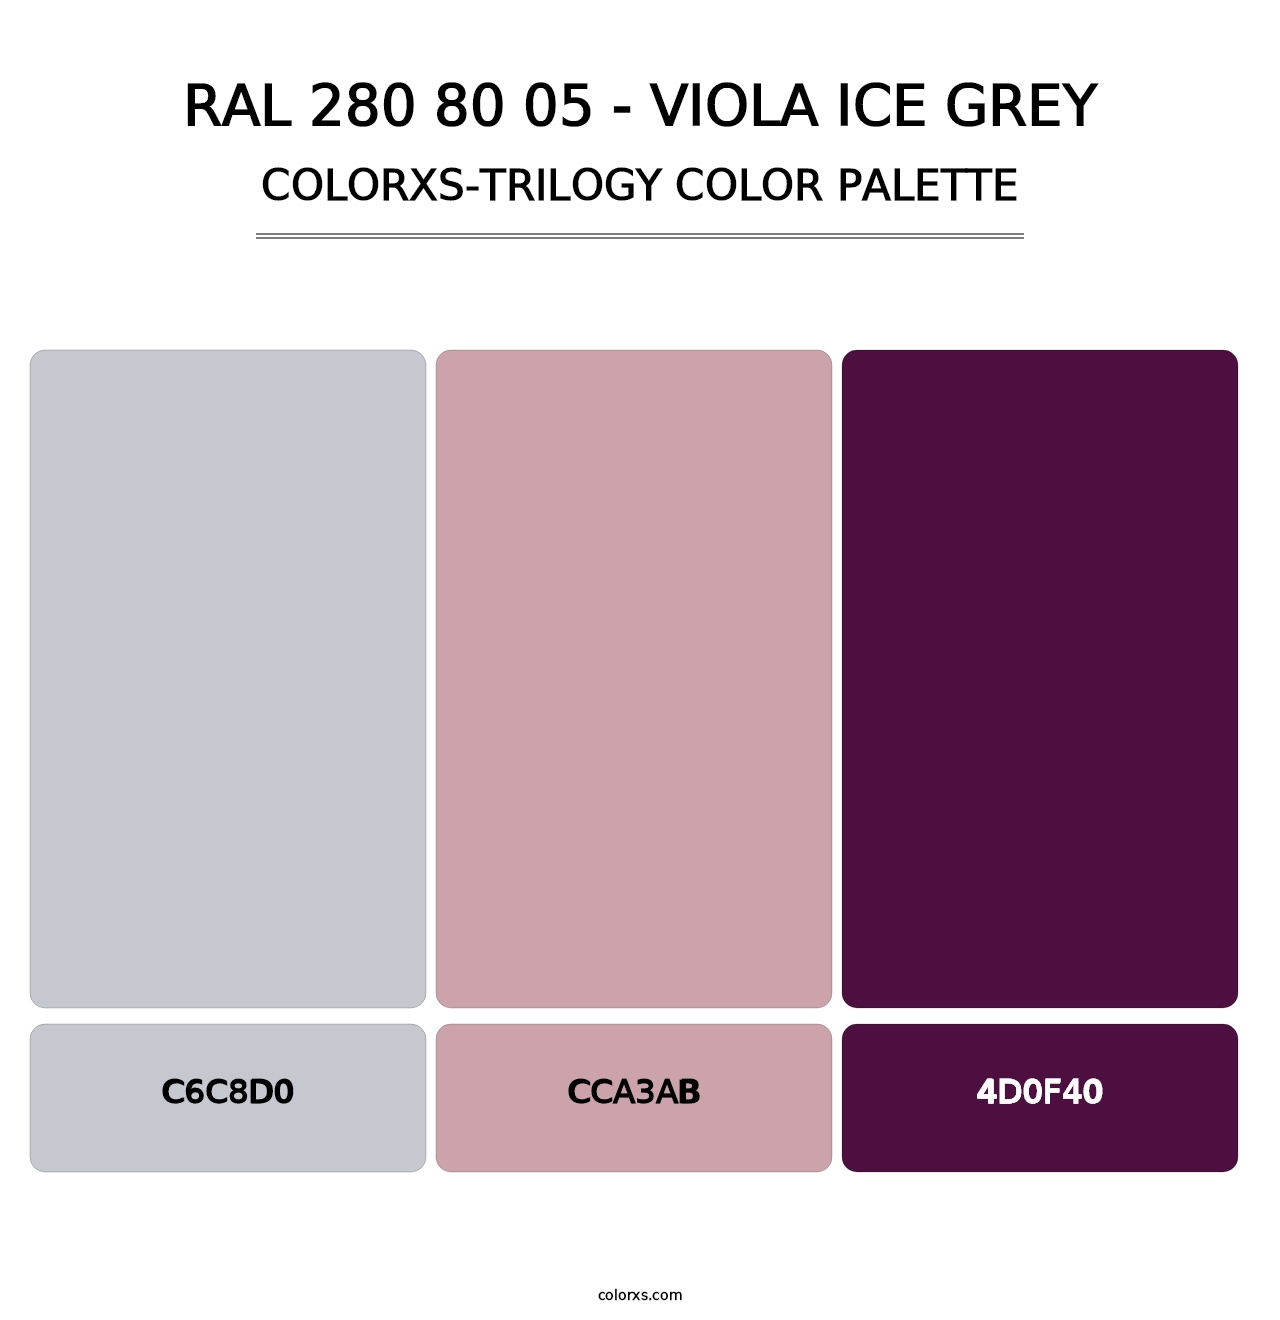 RAL 280 80 05 - Viola Ice Grey - Colorxs Trilogy Palette